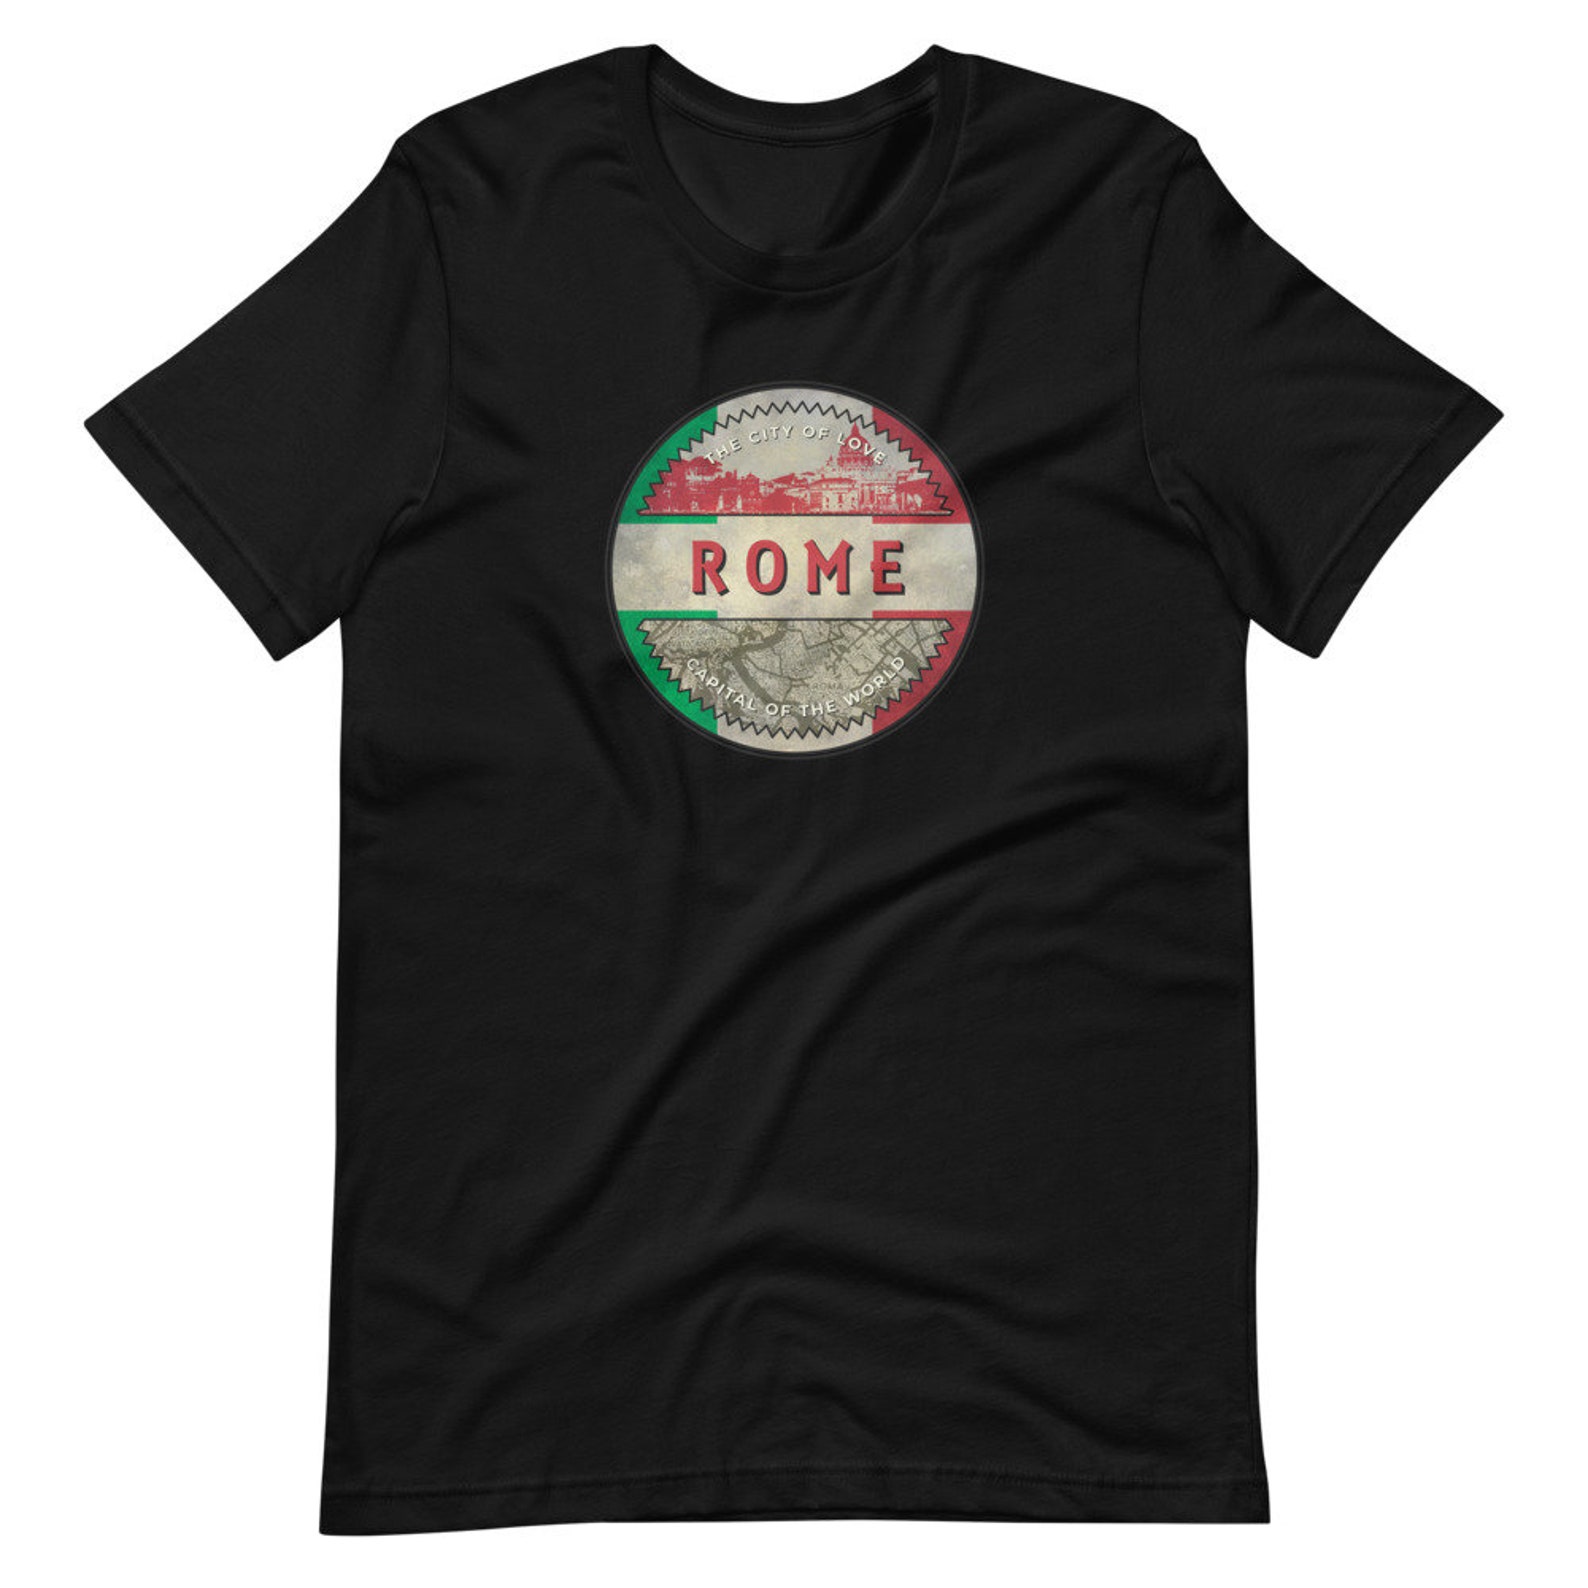 Rome City Unisex T-Shirt Rome tee Italian City T-shirt | Etsy